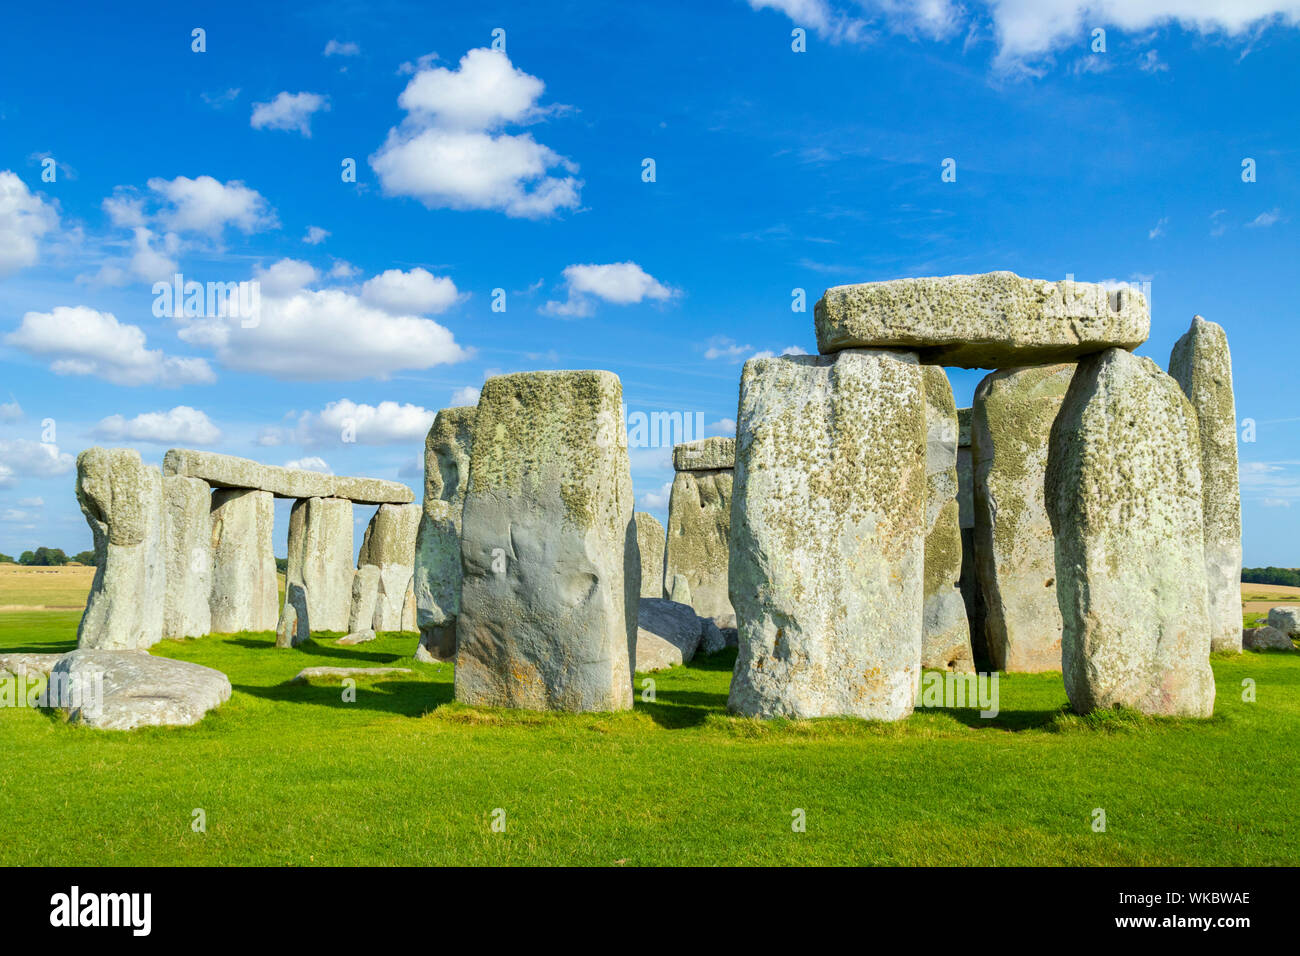 Le cercle de pierres de Stonehenge pierres dressées et bluestones sarsen couché à Stonehenge près de Amesbury Wiltshire england uk go Europe Banque D'Images